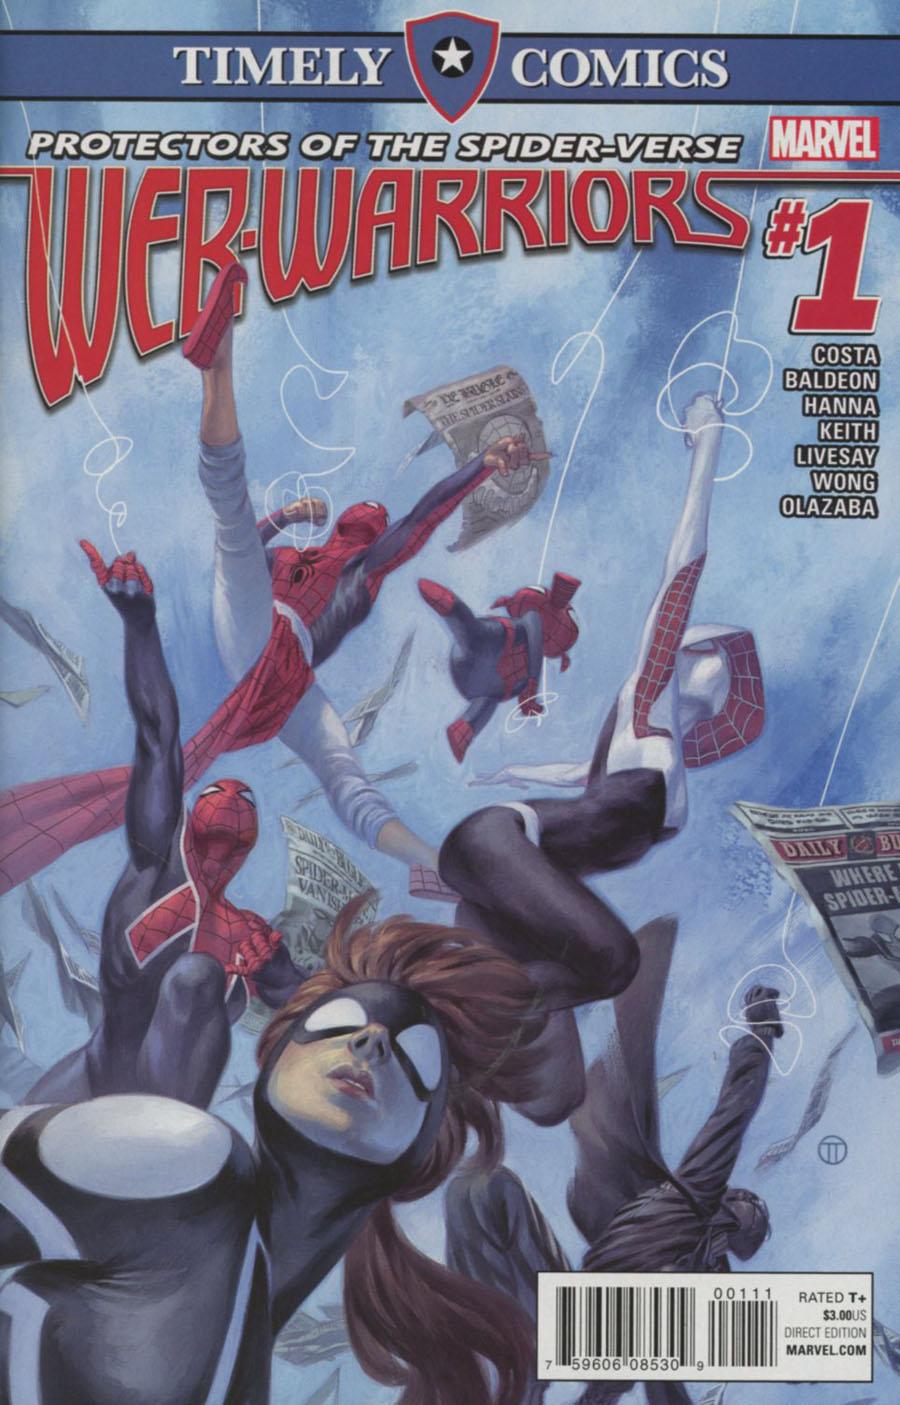 Timely Comics Web Warriors Vol. 1 #1